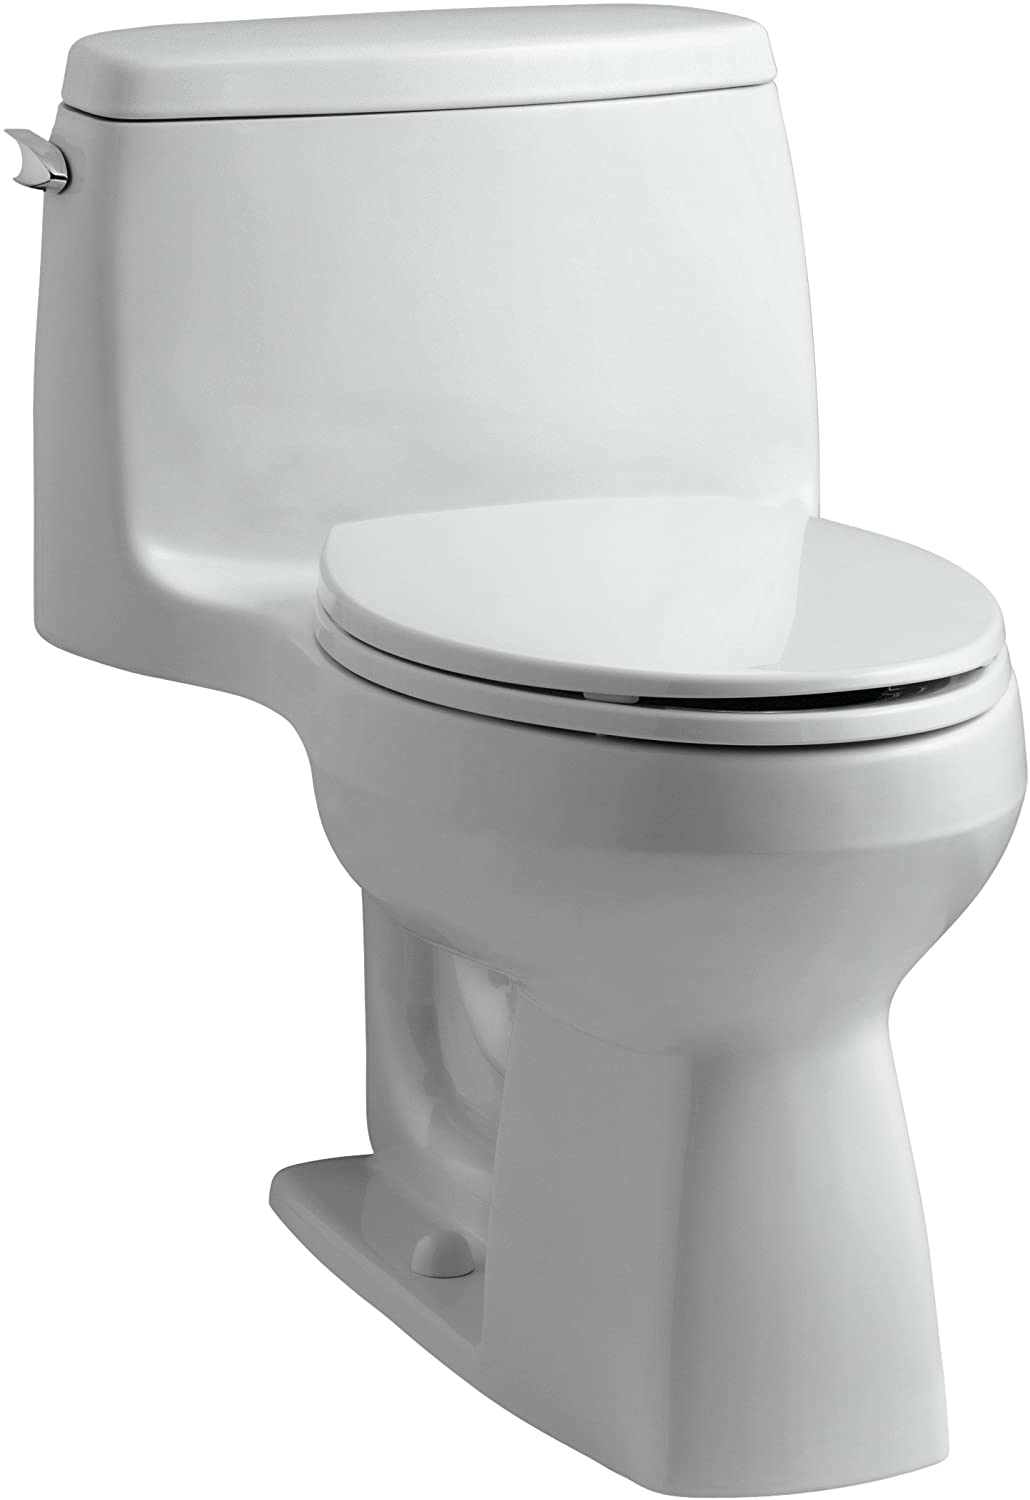 Kohler 3810-95 Santa Rosa Toilet 